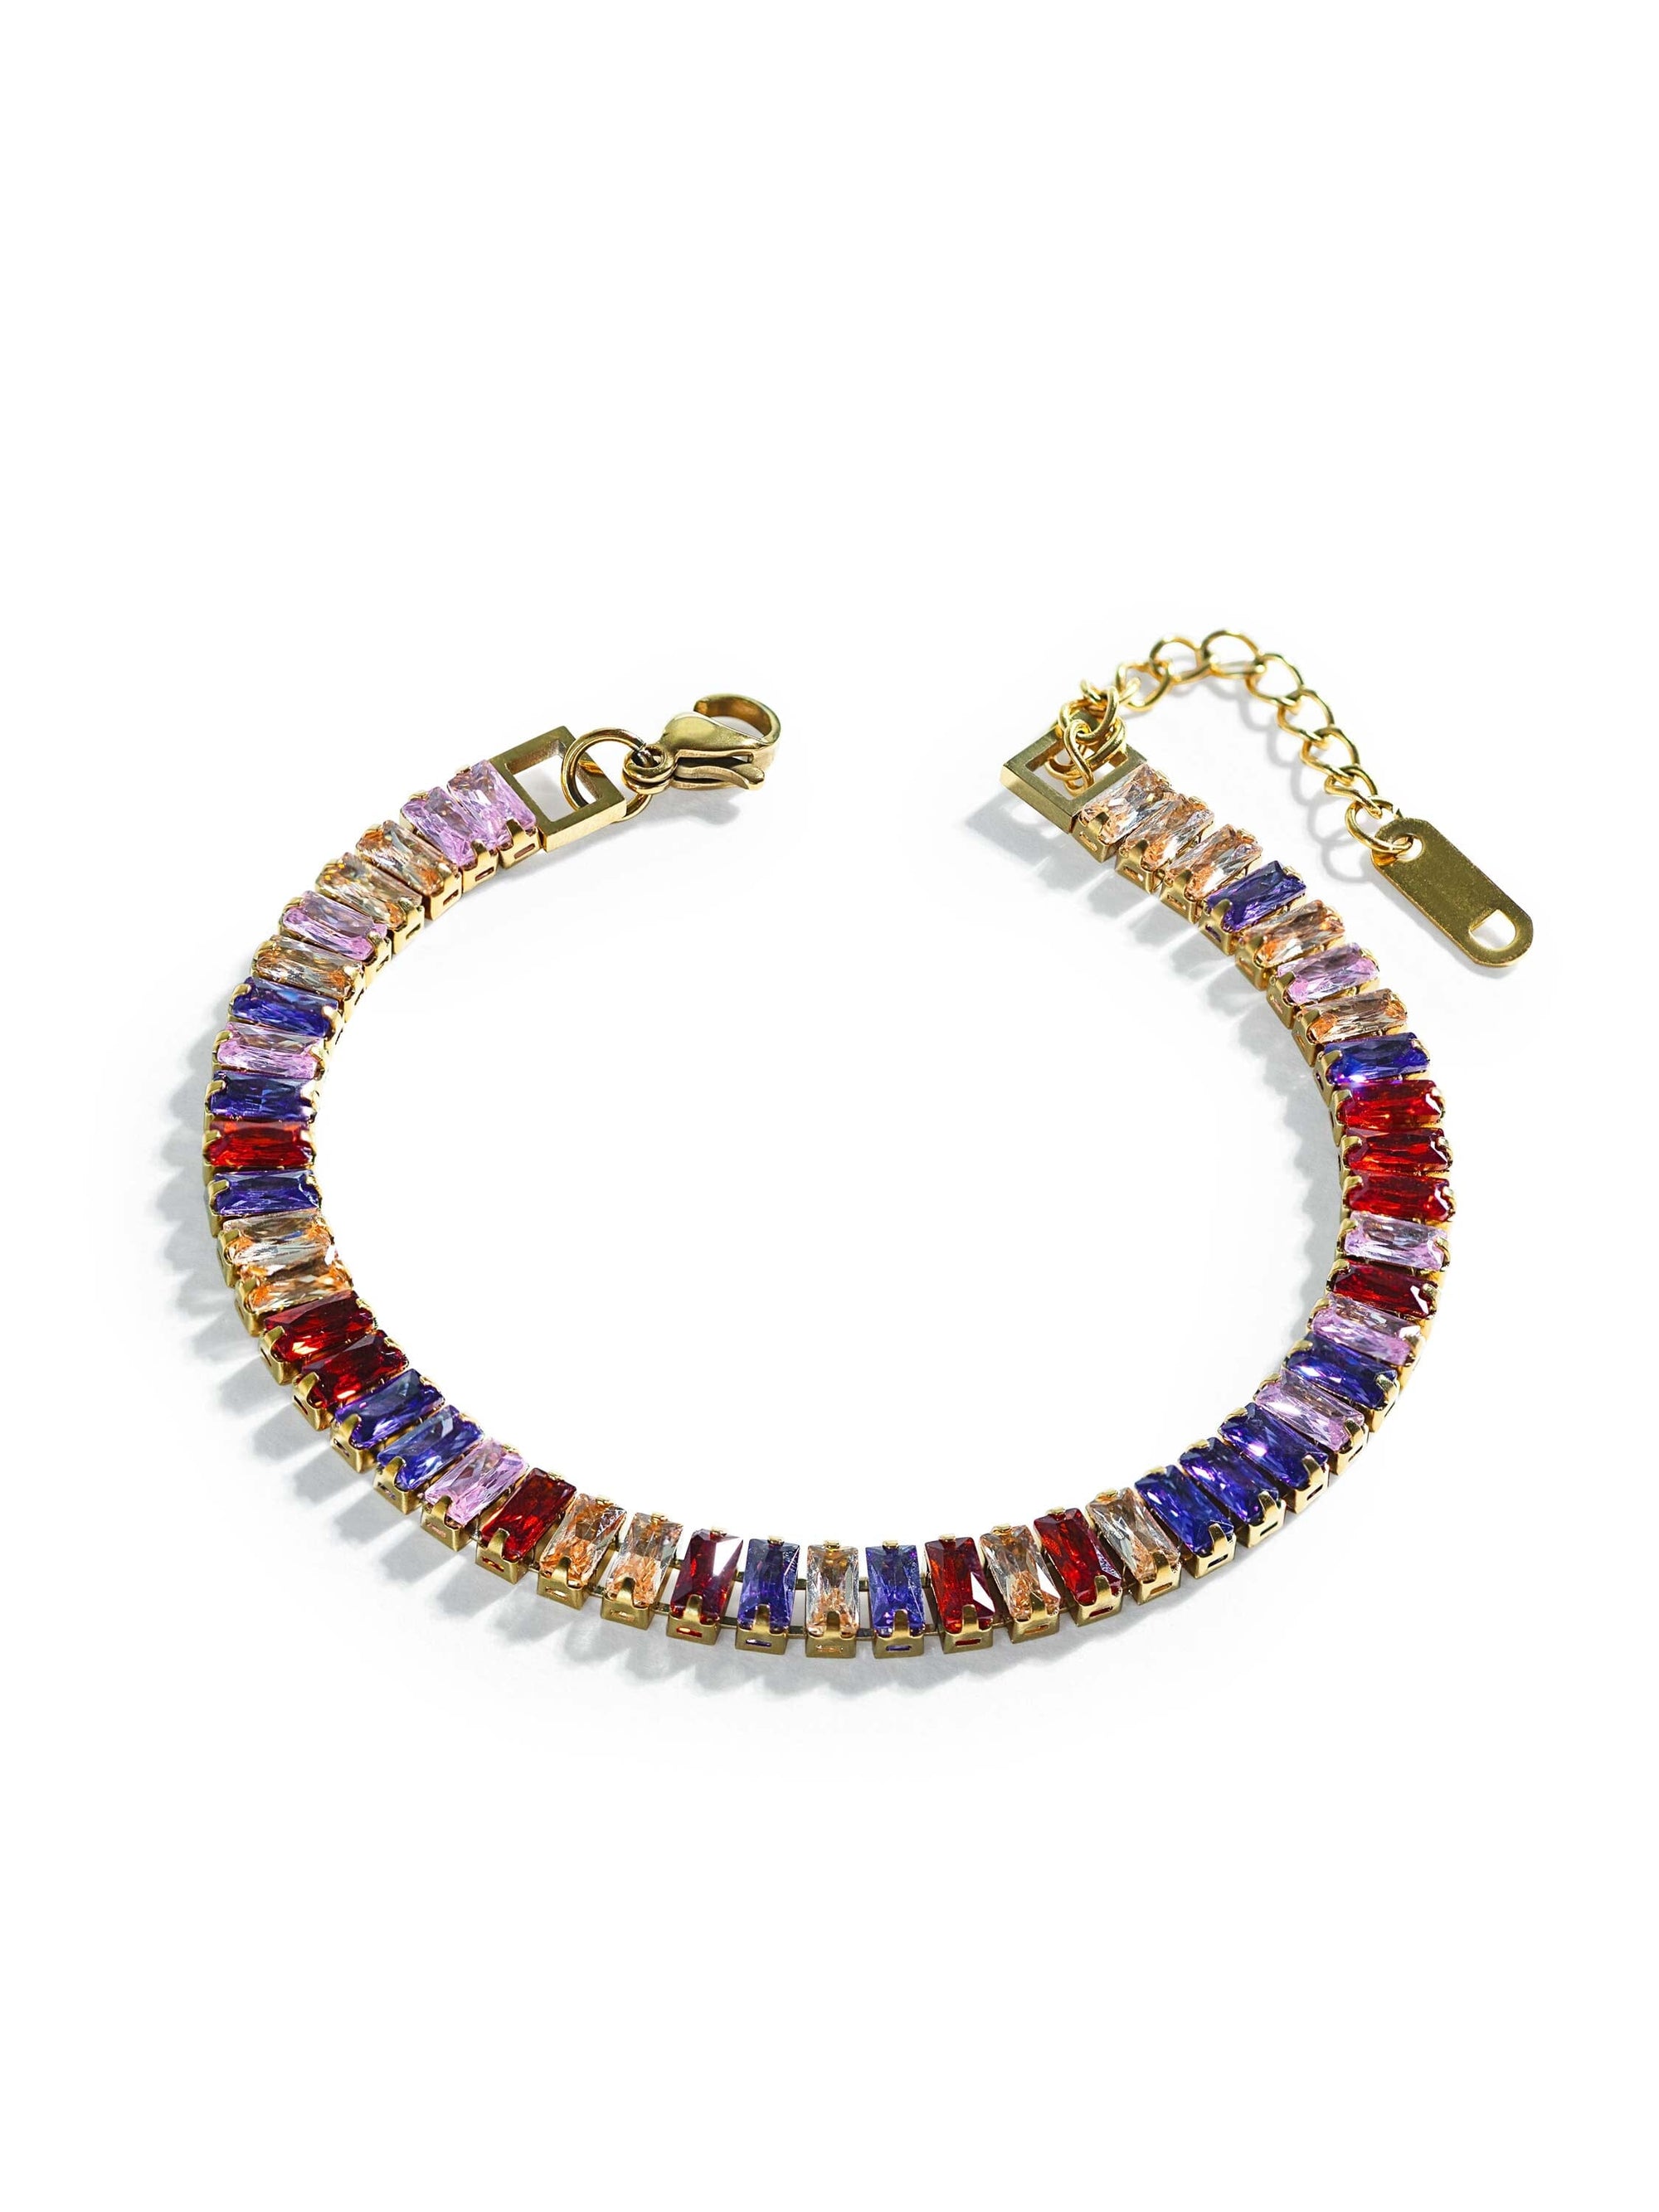 Colorful Tennis Bracelet bracelet Vinty Jewelry 